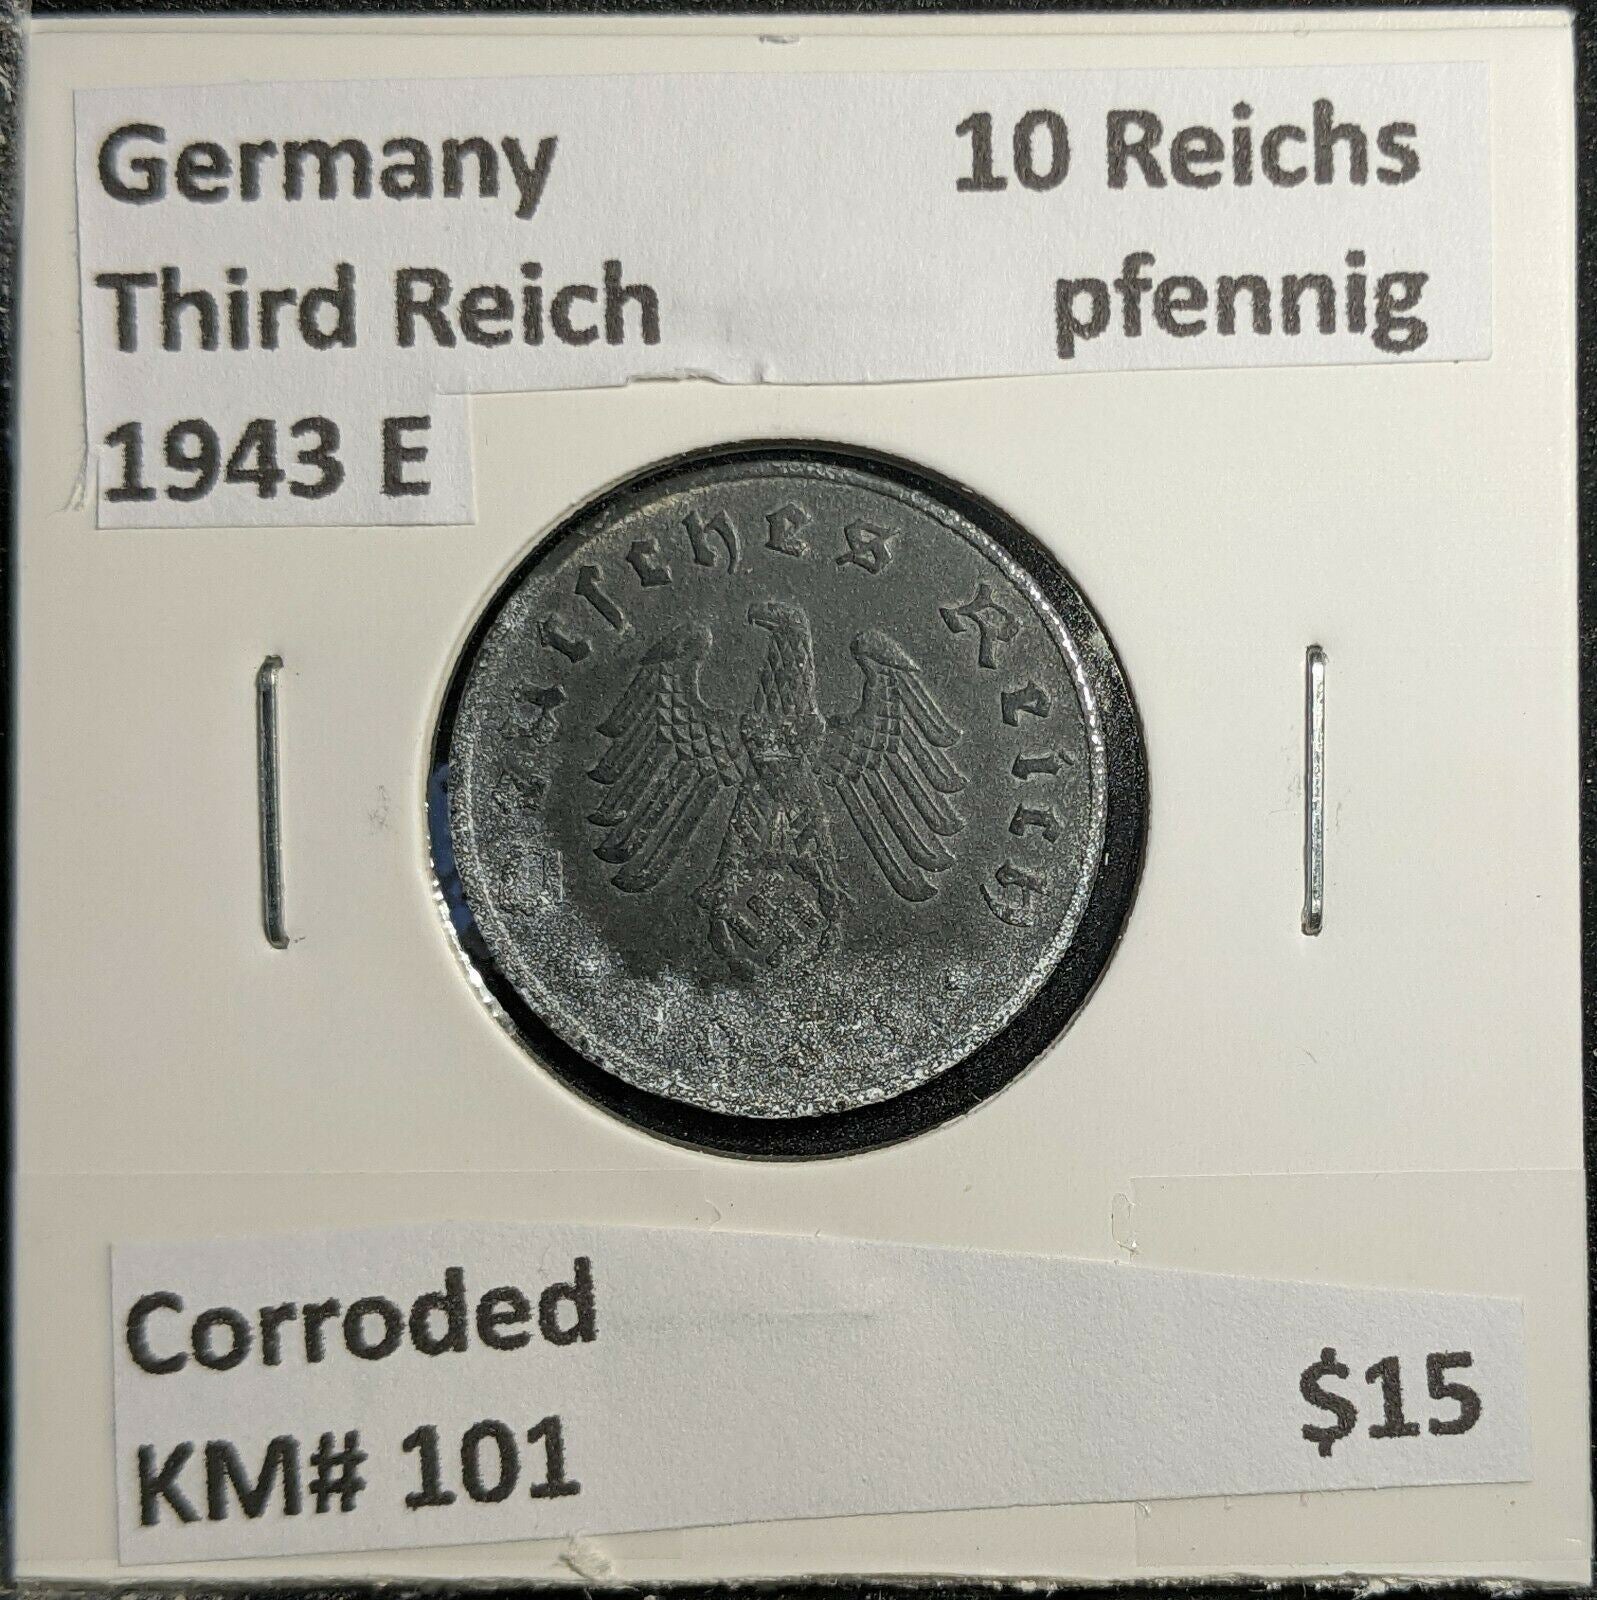 Germany Third Reich 1943 E 10 Reichspfennig KM# 101 Corroded  #338 2B